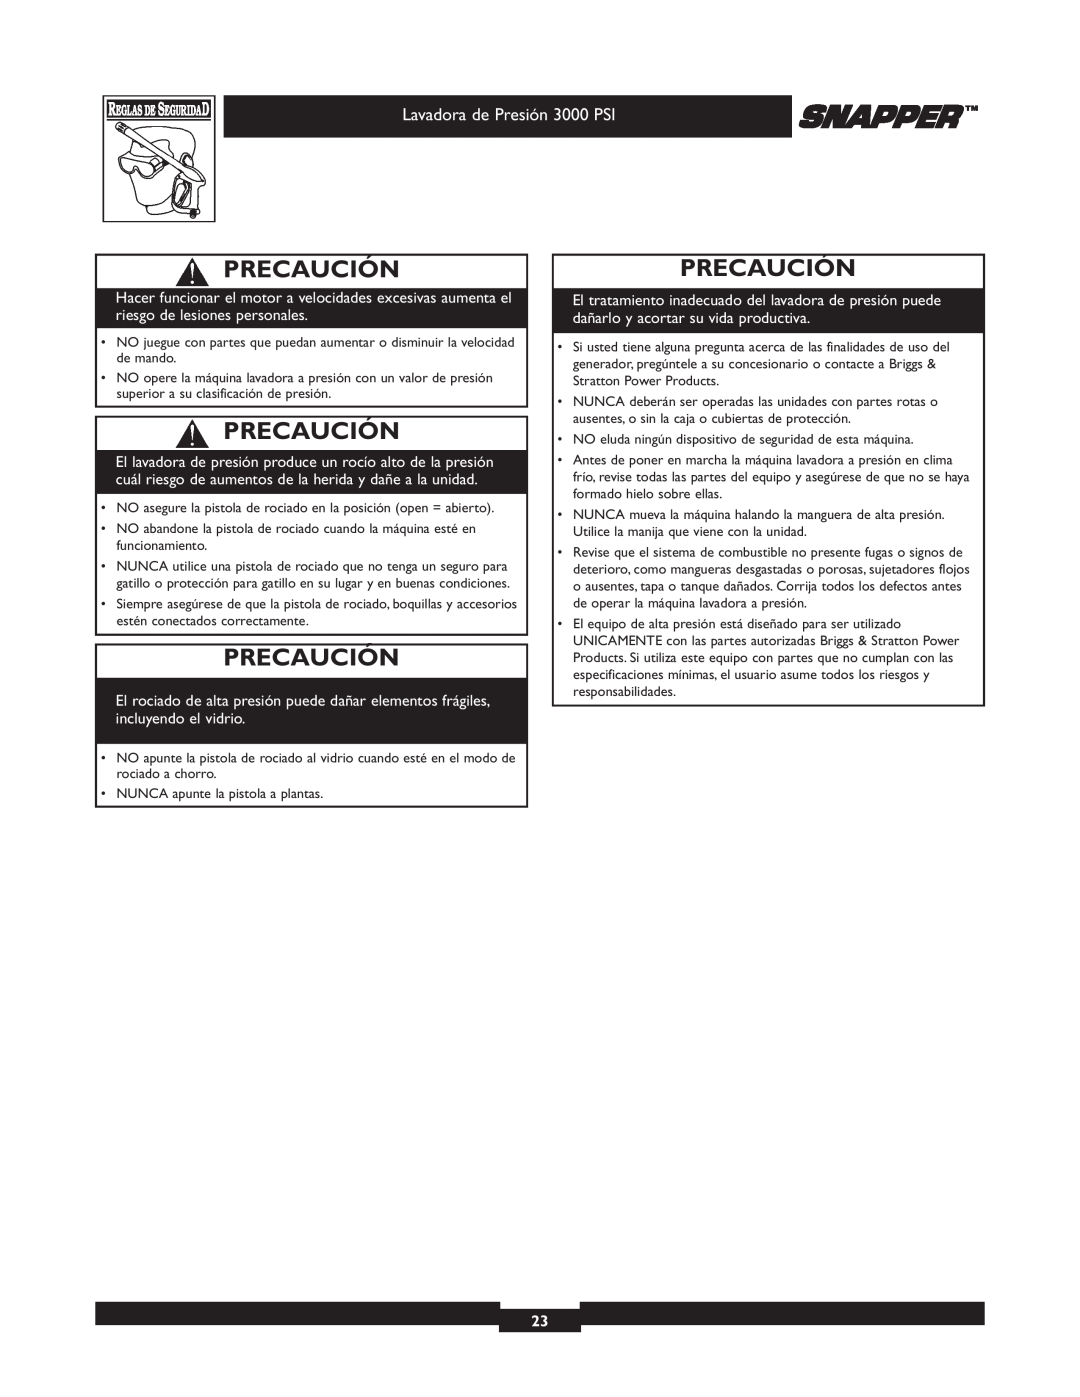 Snapper 020231-2 manual Precaución, Lavadora de Presión 3000 PSI 